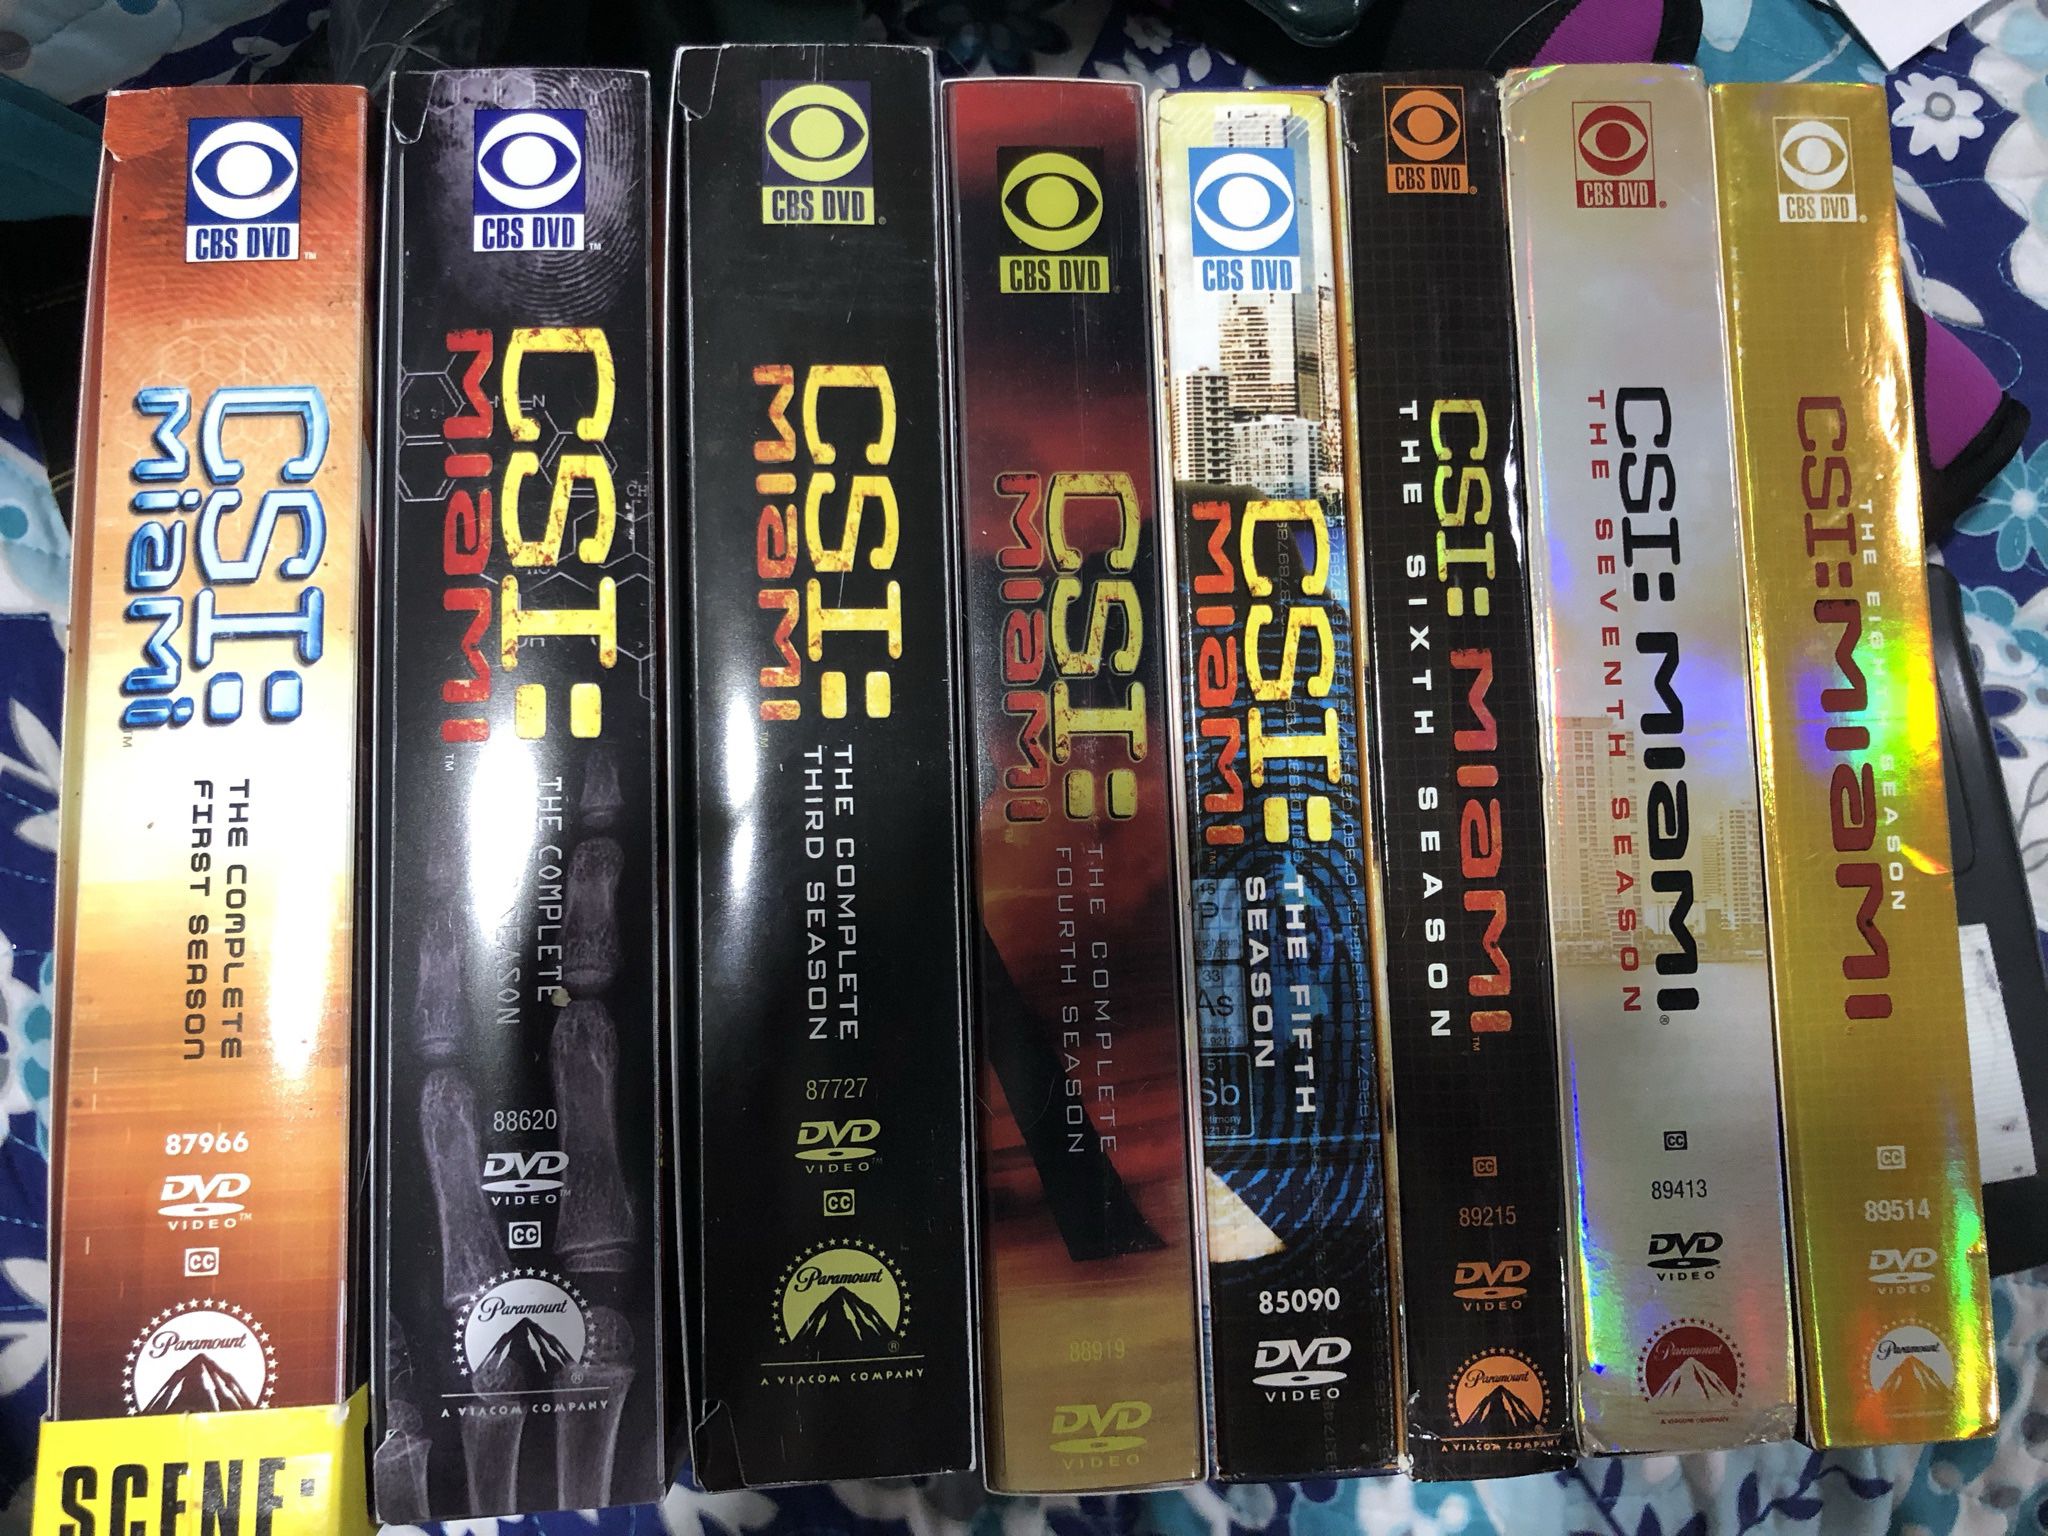 CSI Miami season 1-8